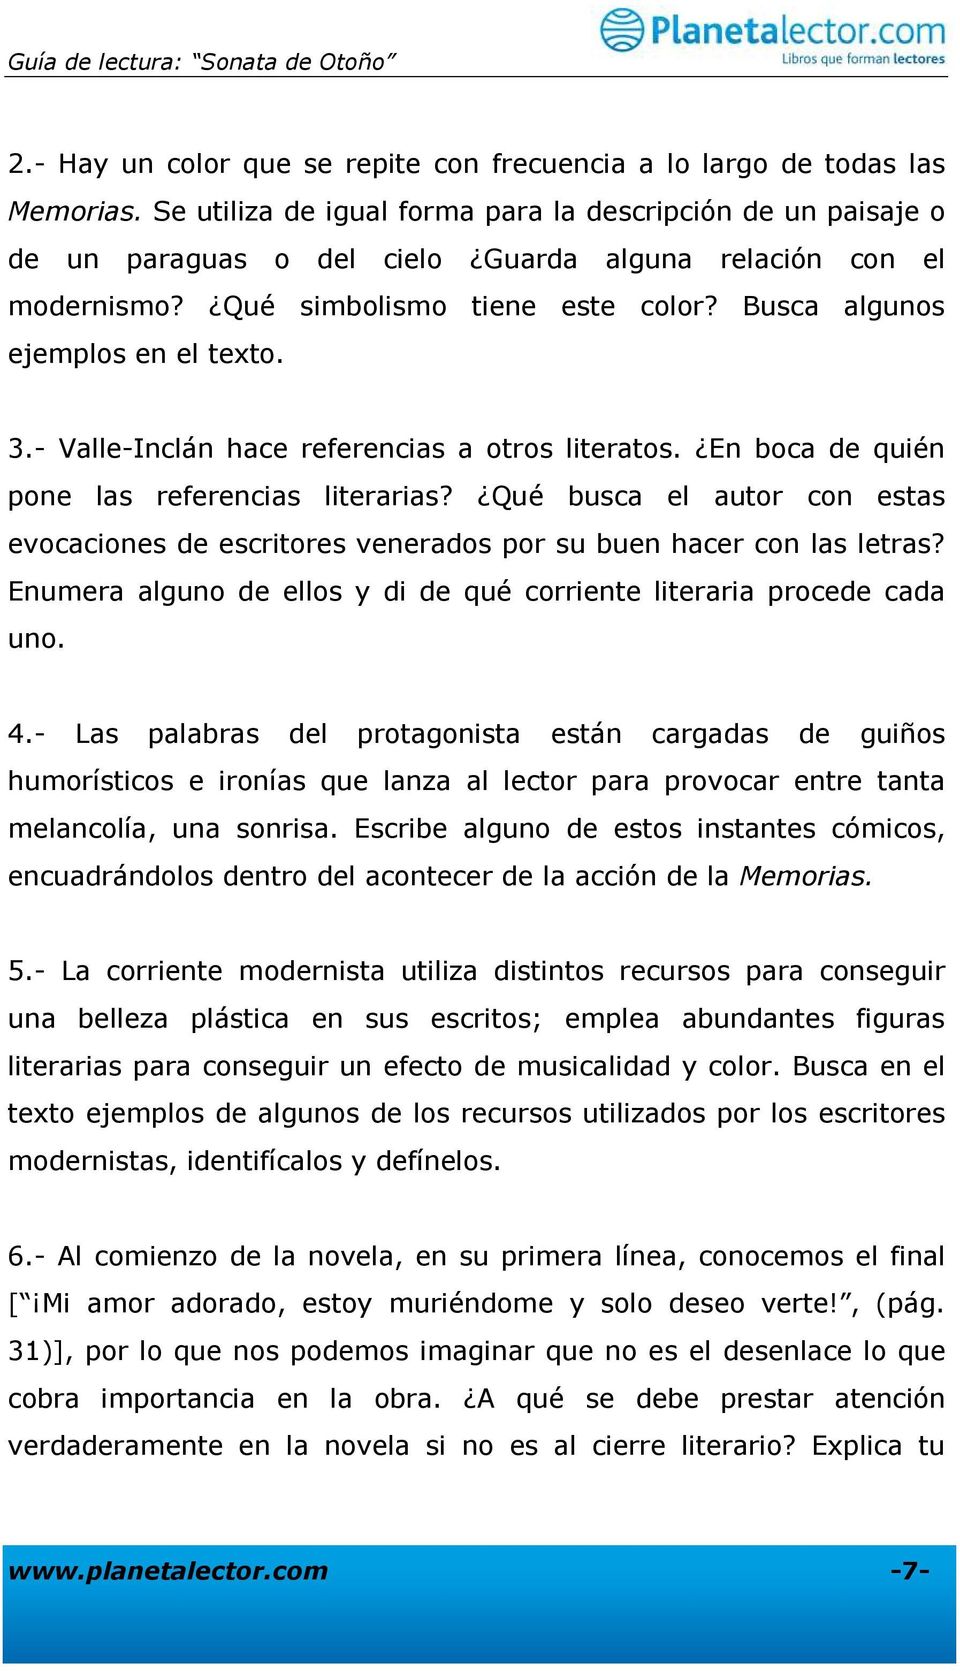 3.- Valle-Inclán hace referencias a otros literatos. En boca de quién pone las referencias literarias?